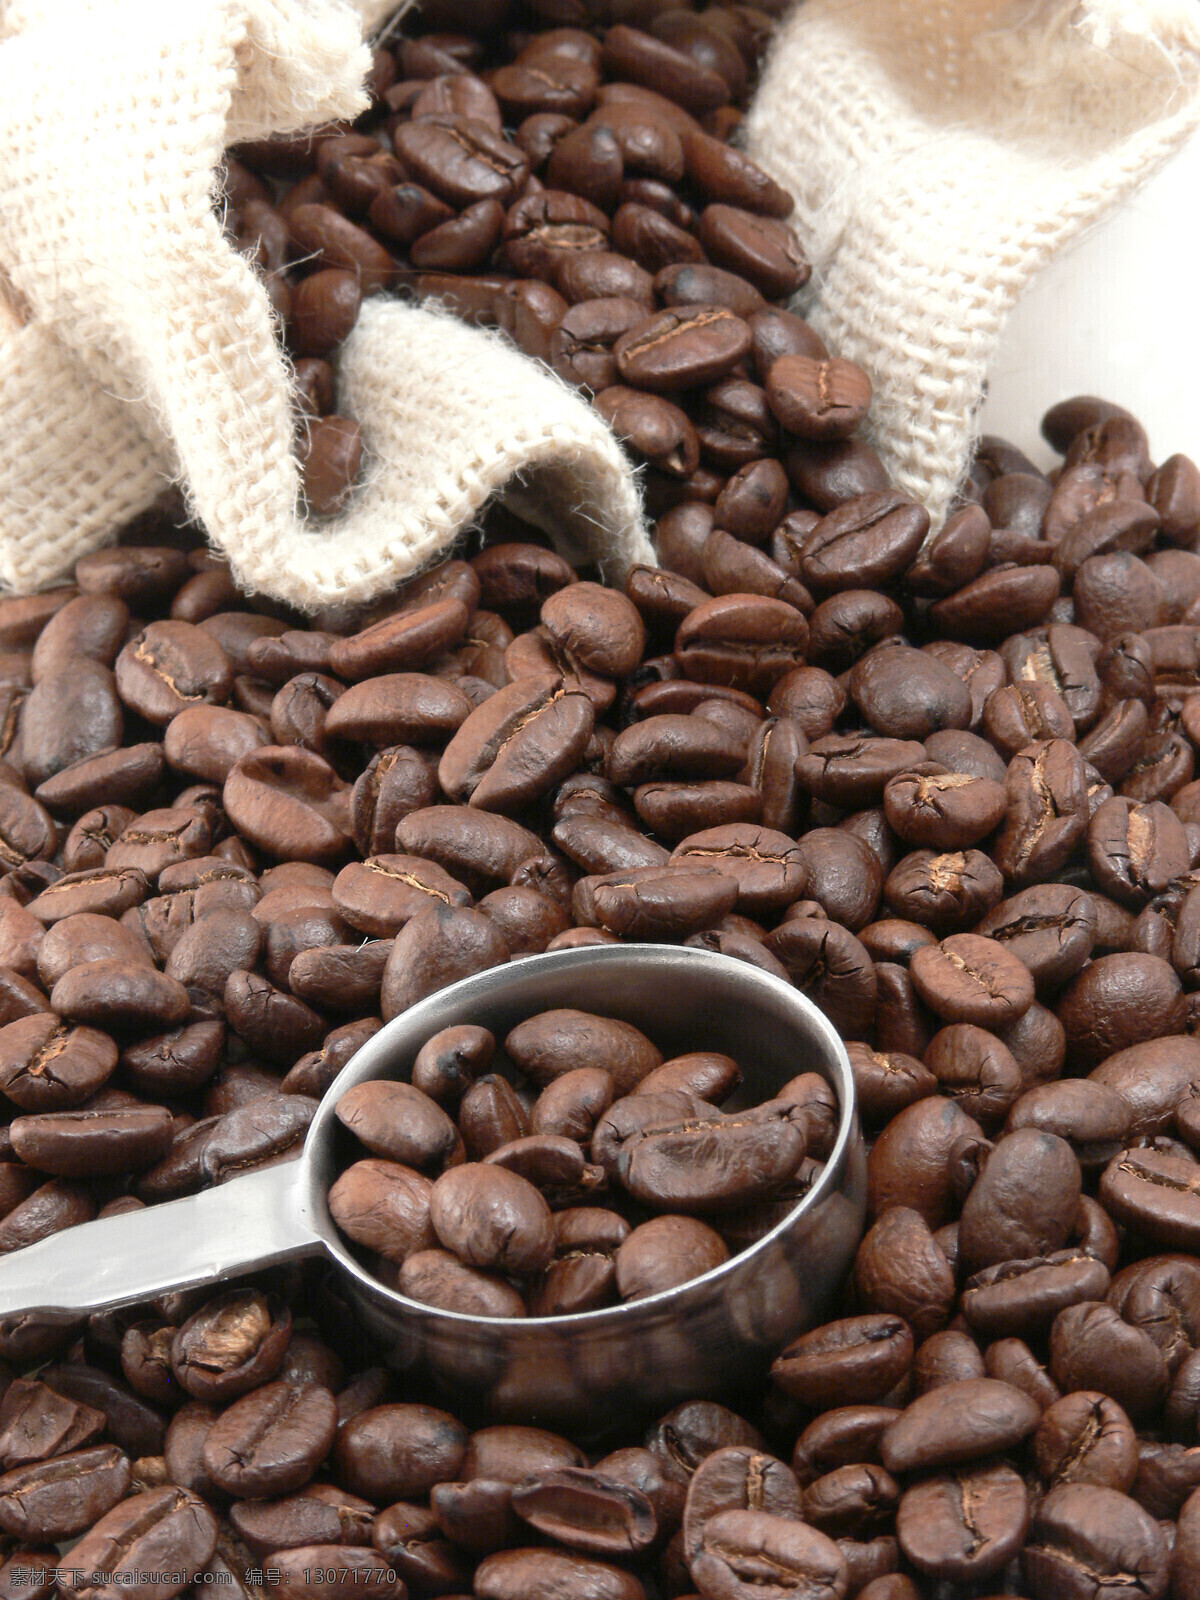 麻袋 里 咖啡 咖啡豆 加工原料 咖啡图片 餐饮美食